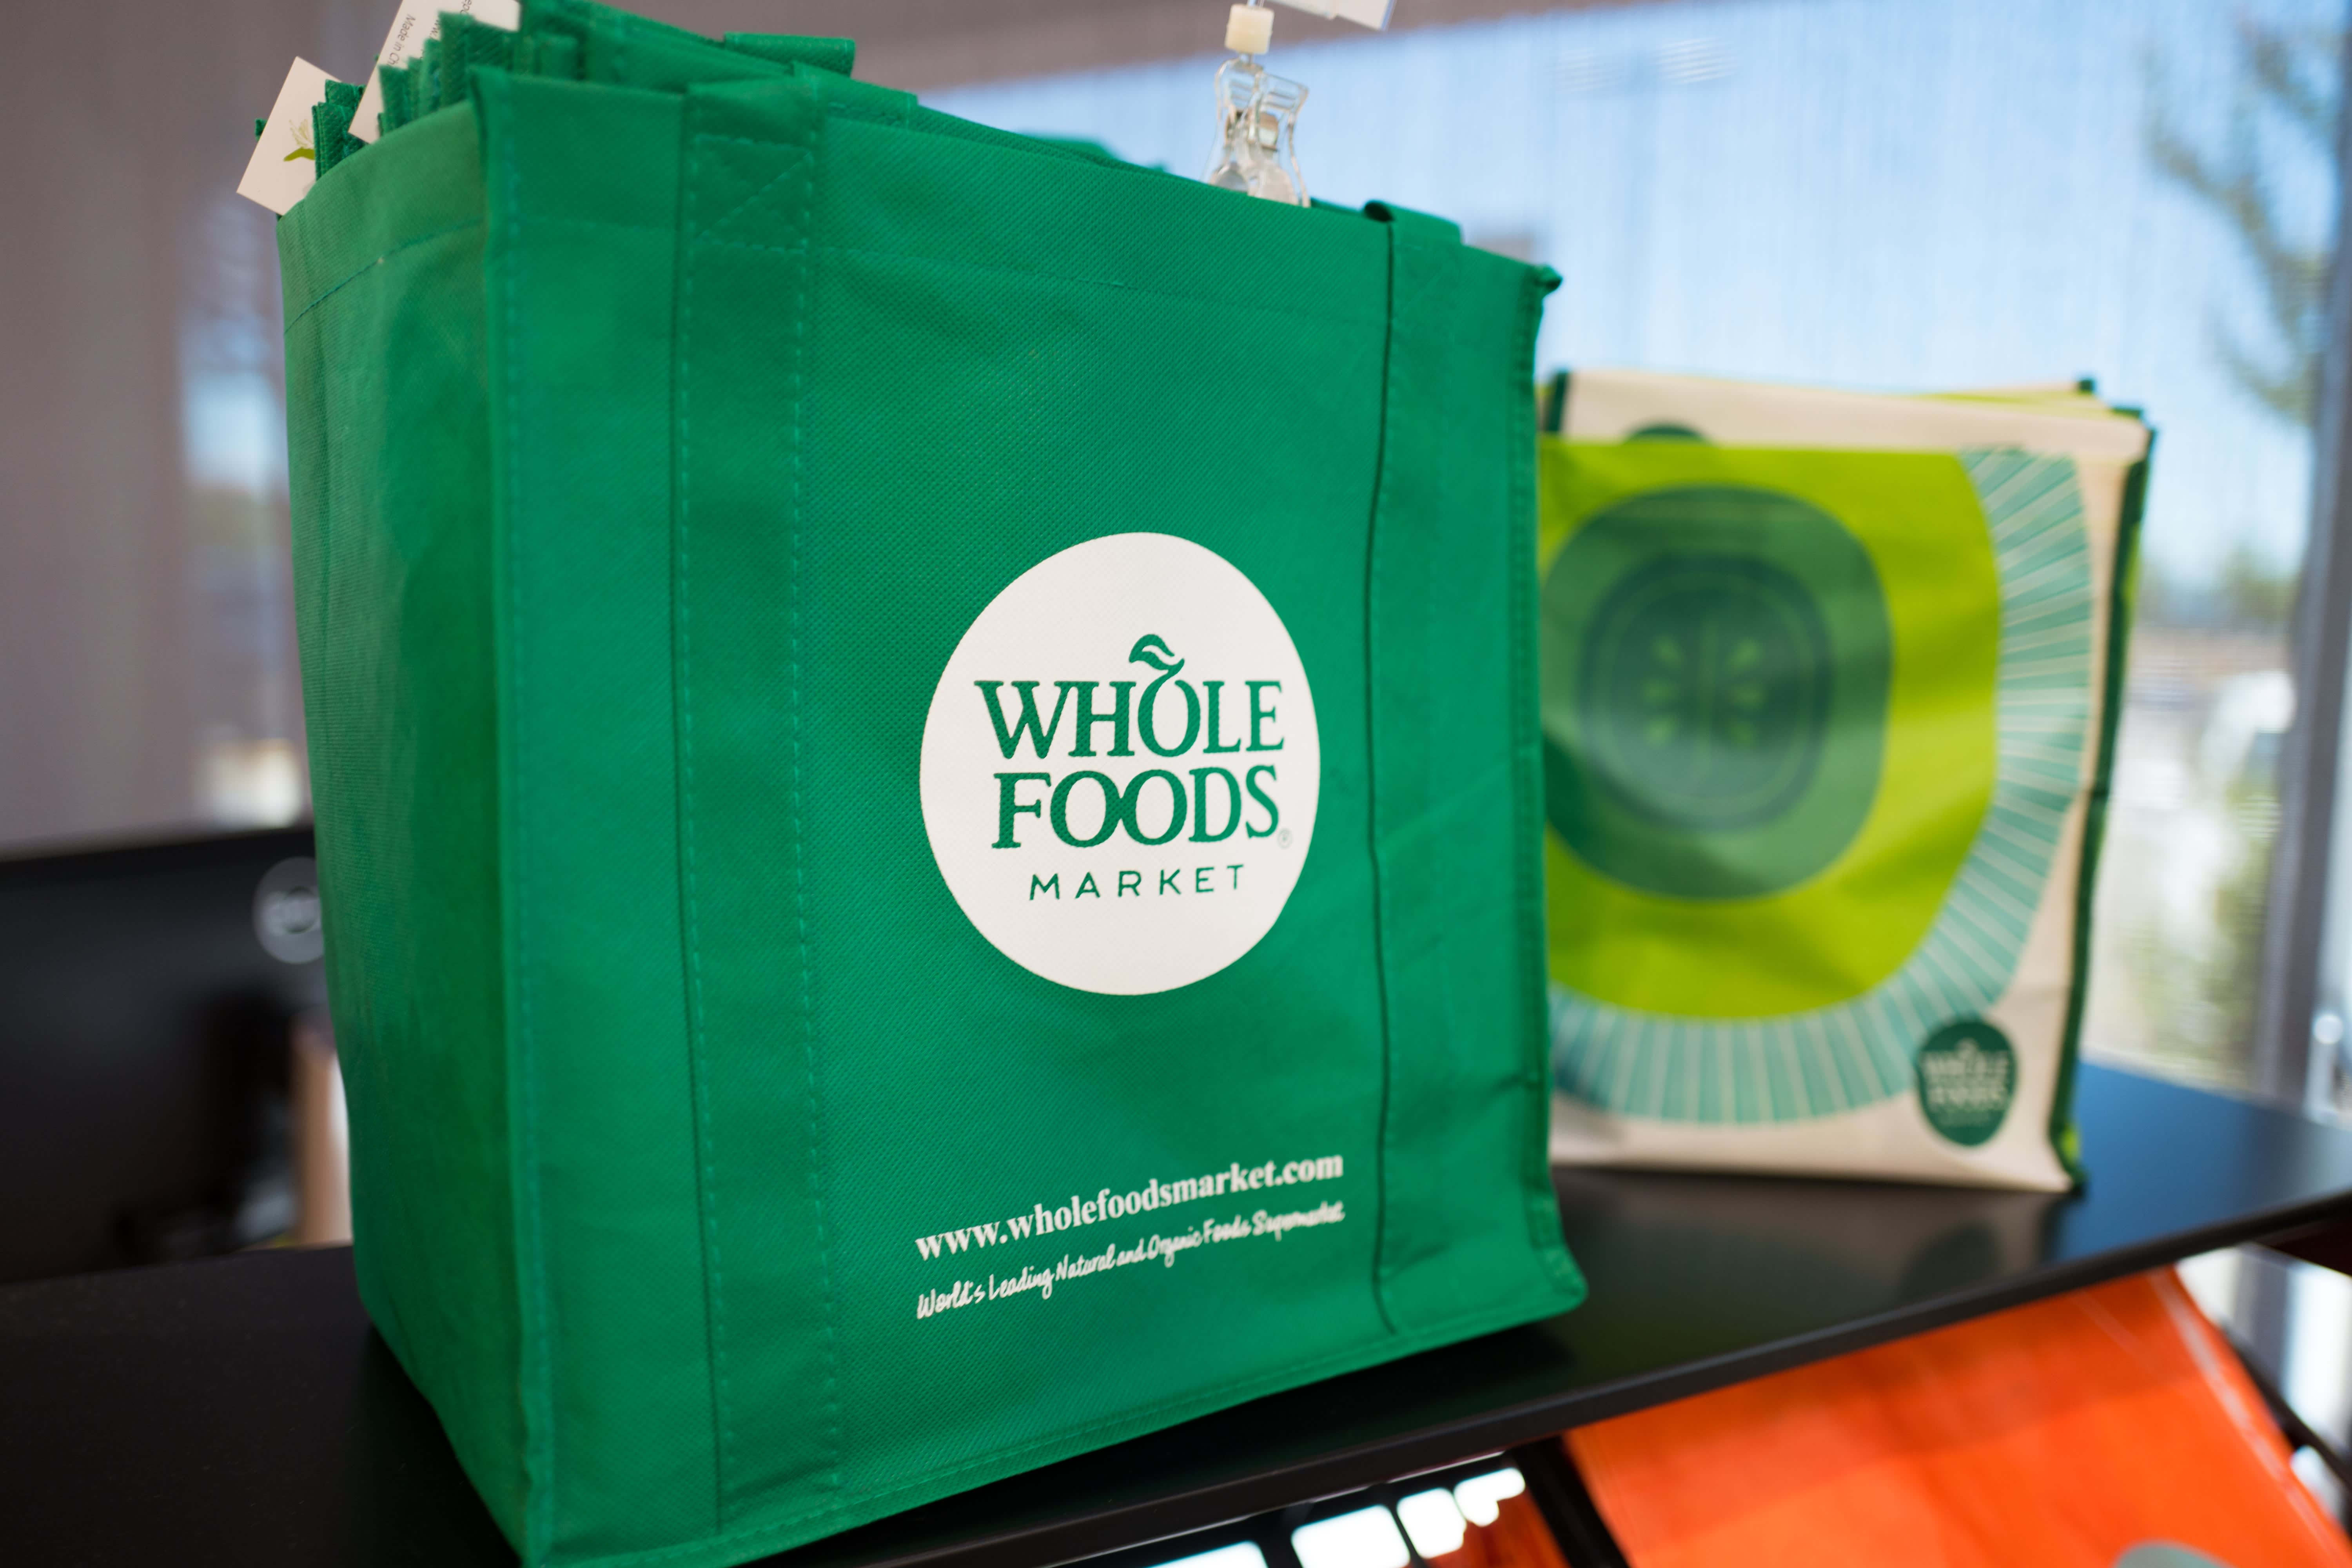 Ontslagen gepland bij Whole Foods: lees de memo hier